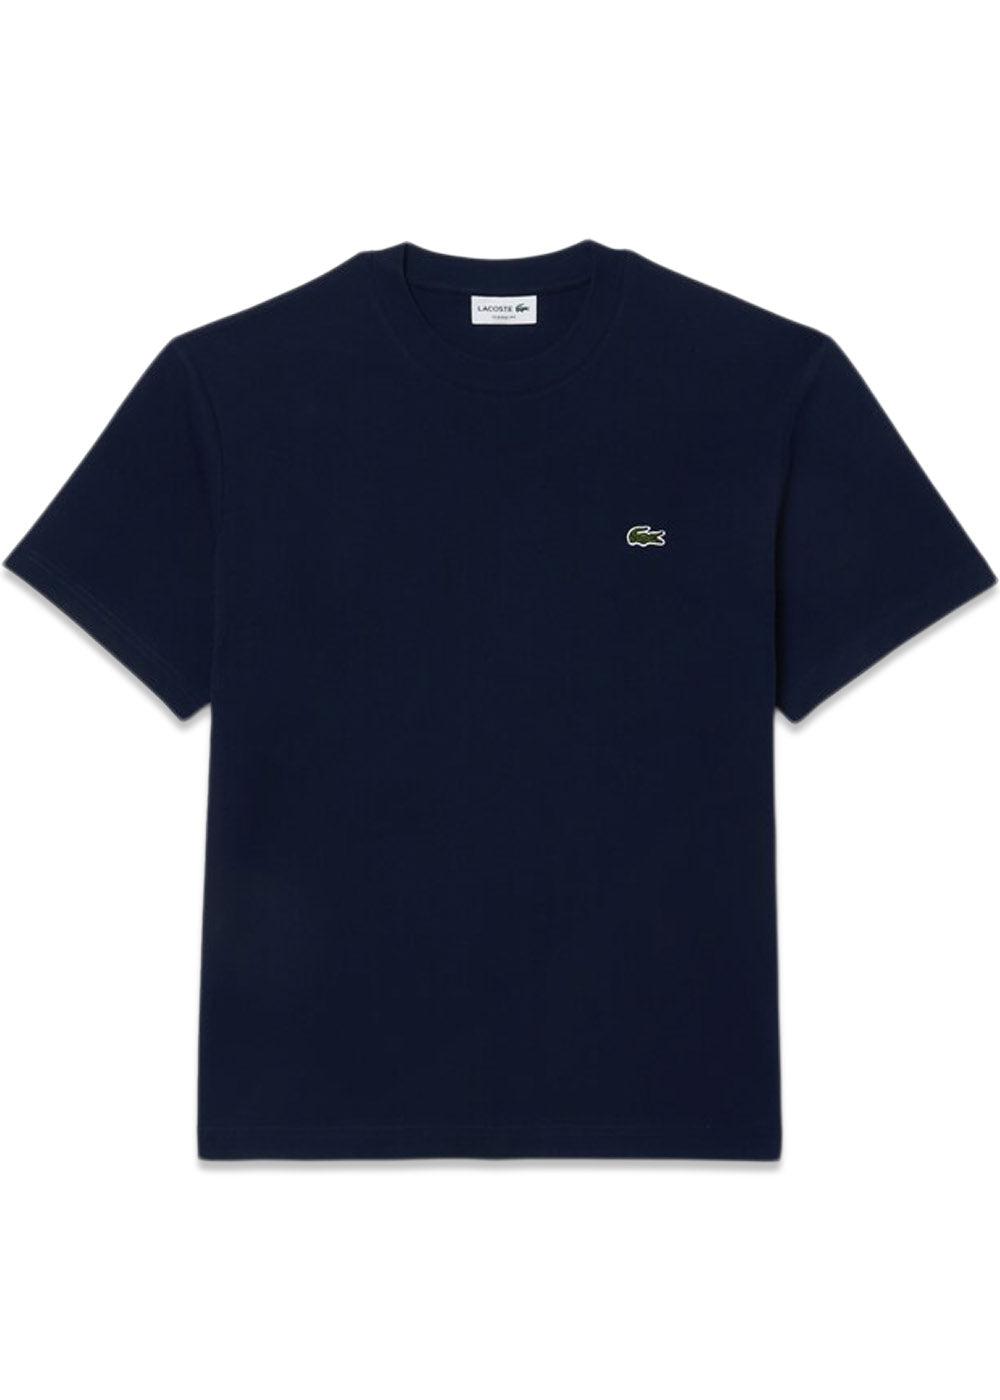 T-Shirt Logo - Navy Blue